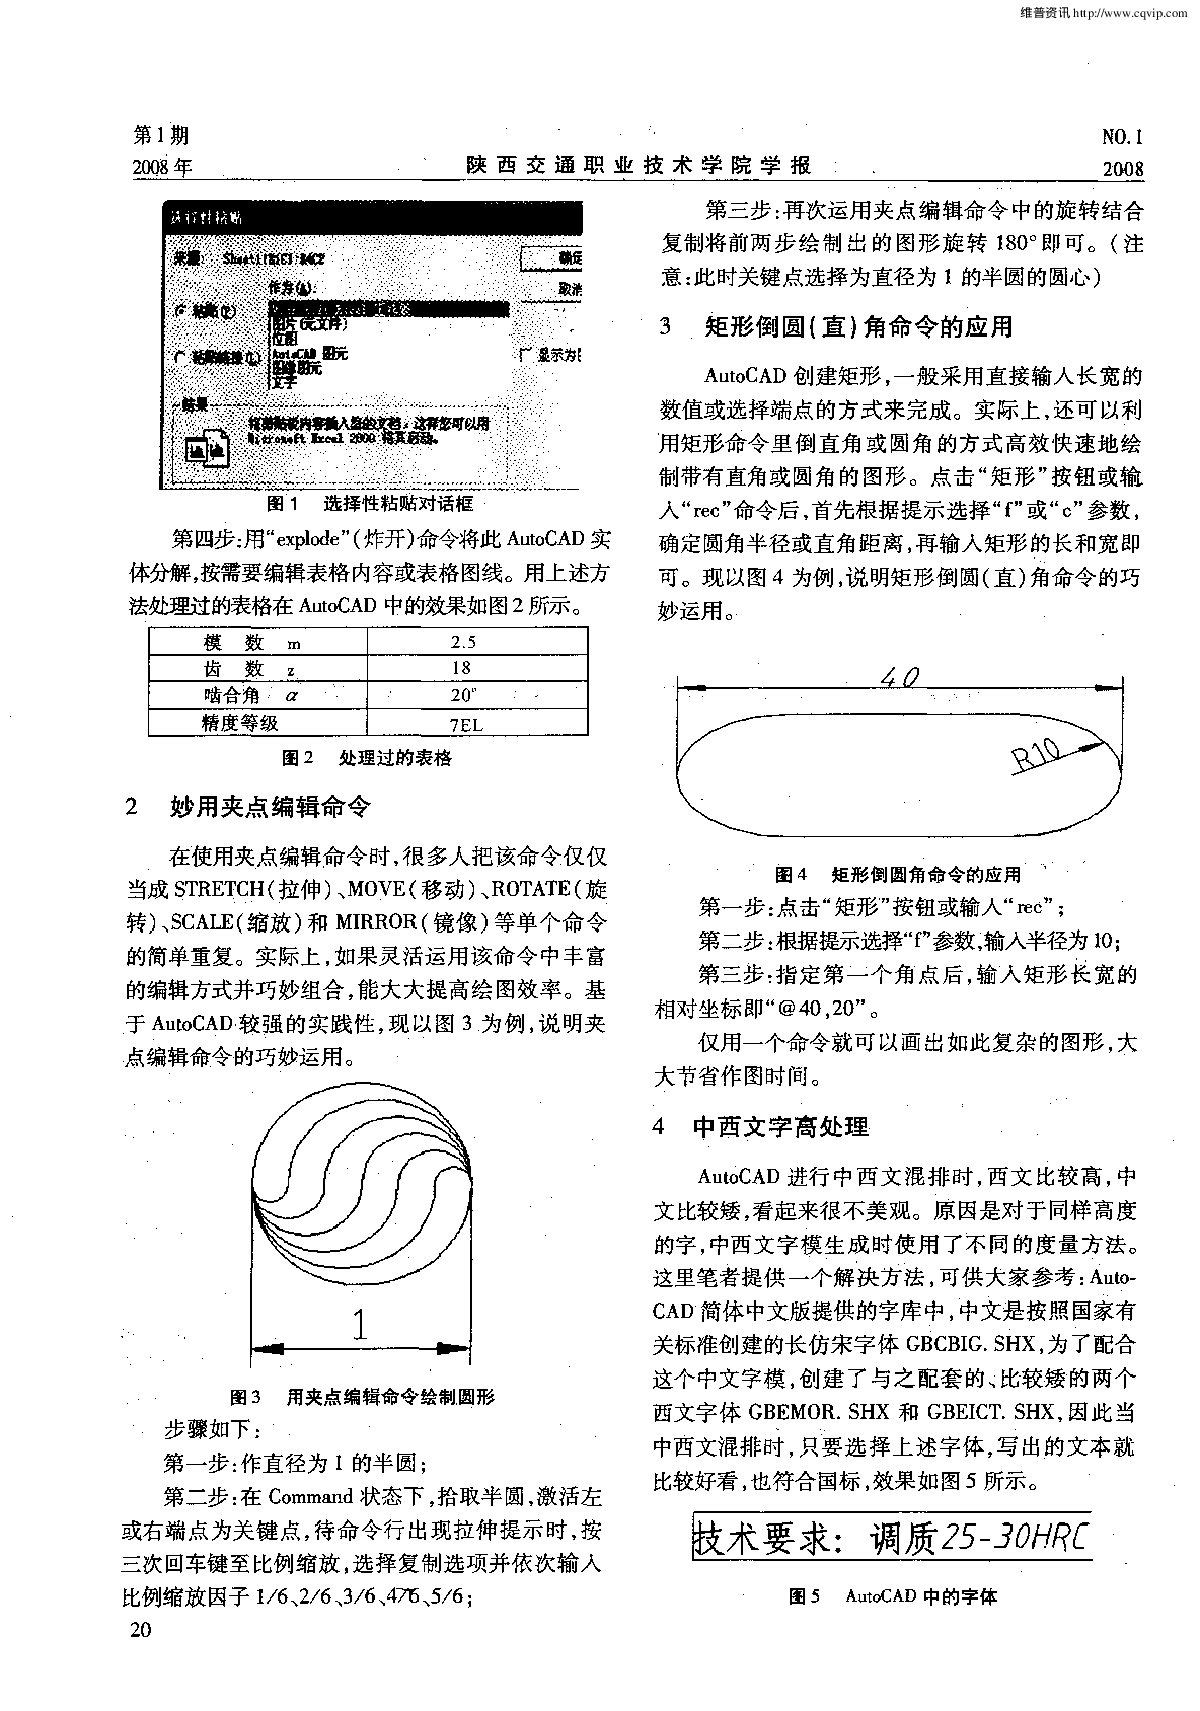 AutoCAD制图典型应用技巧-图二